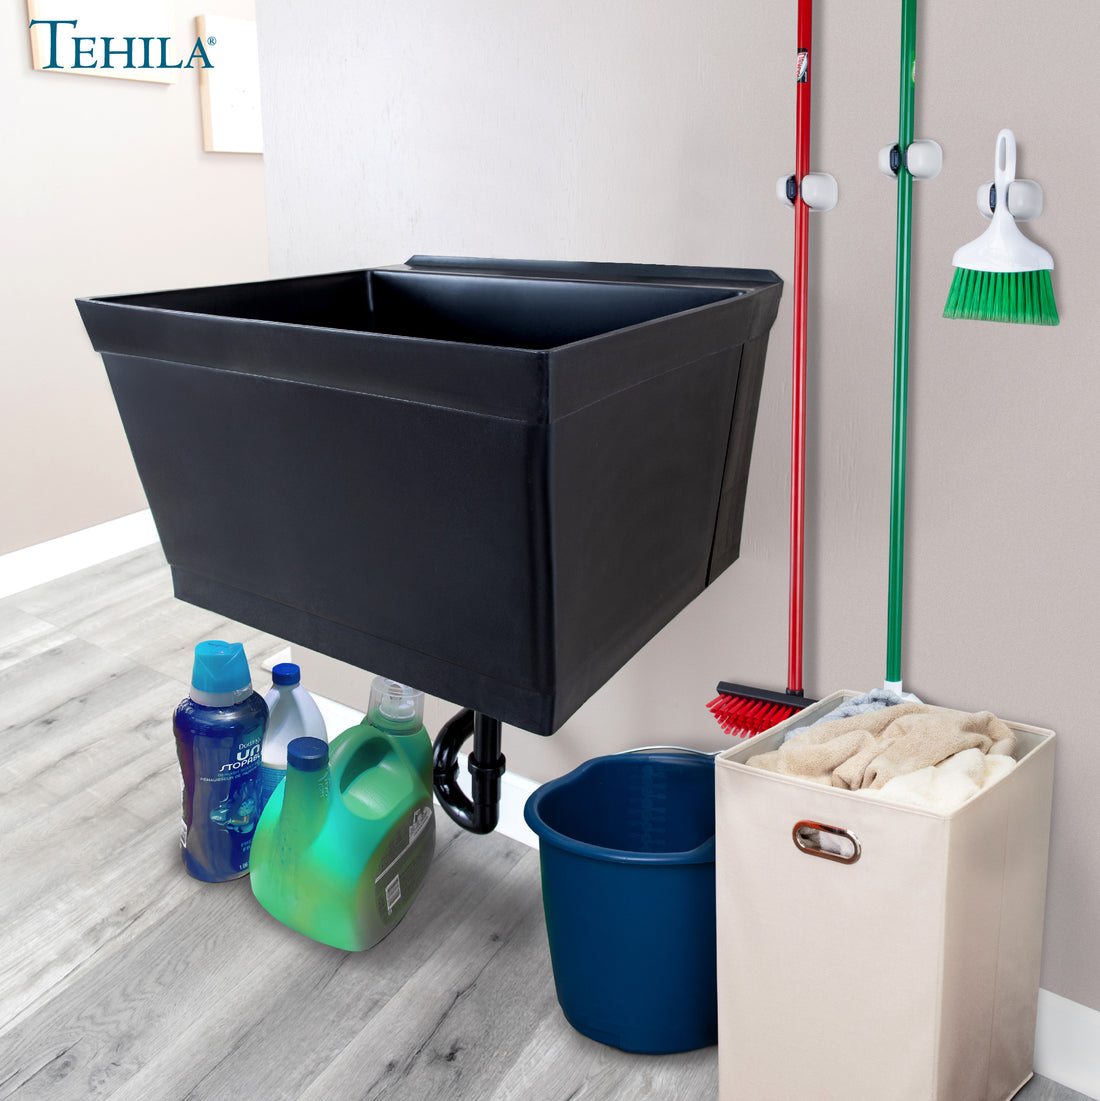 Tehila Standard Wall-Mounted Black Utility Sink, Water Supply Lines Included - Utility sinks vanites Tehila